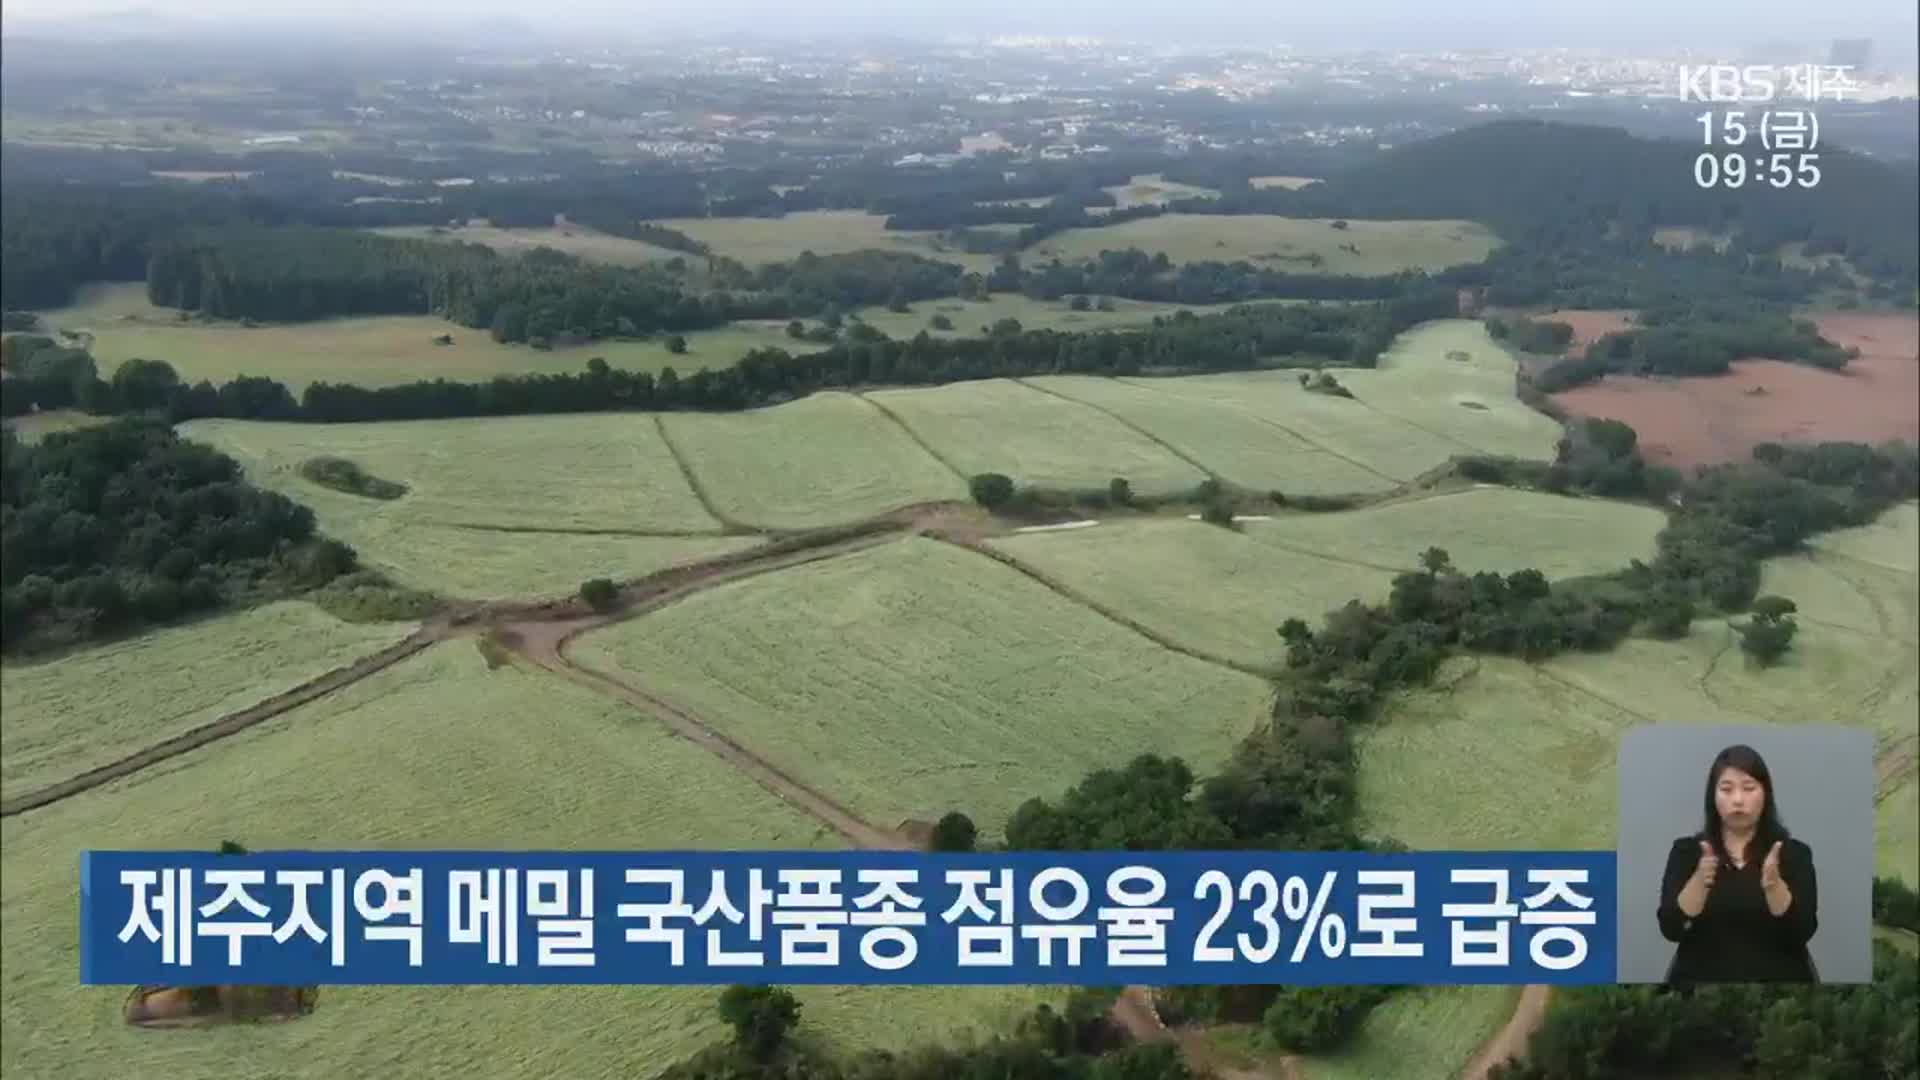 제주지역 메밀 국산품종 점유율 23%로 급증